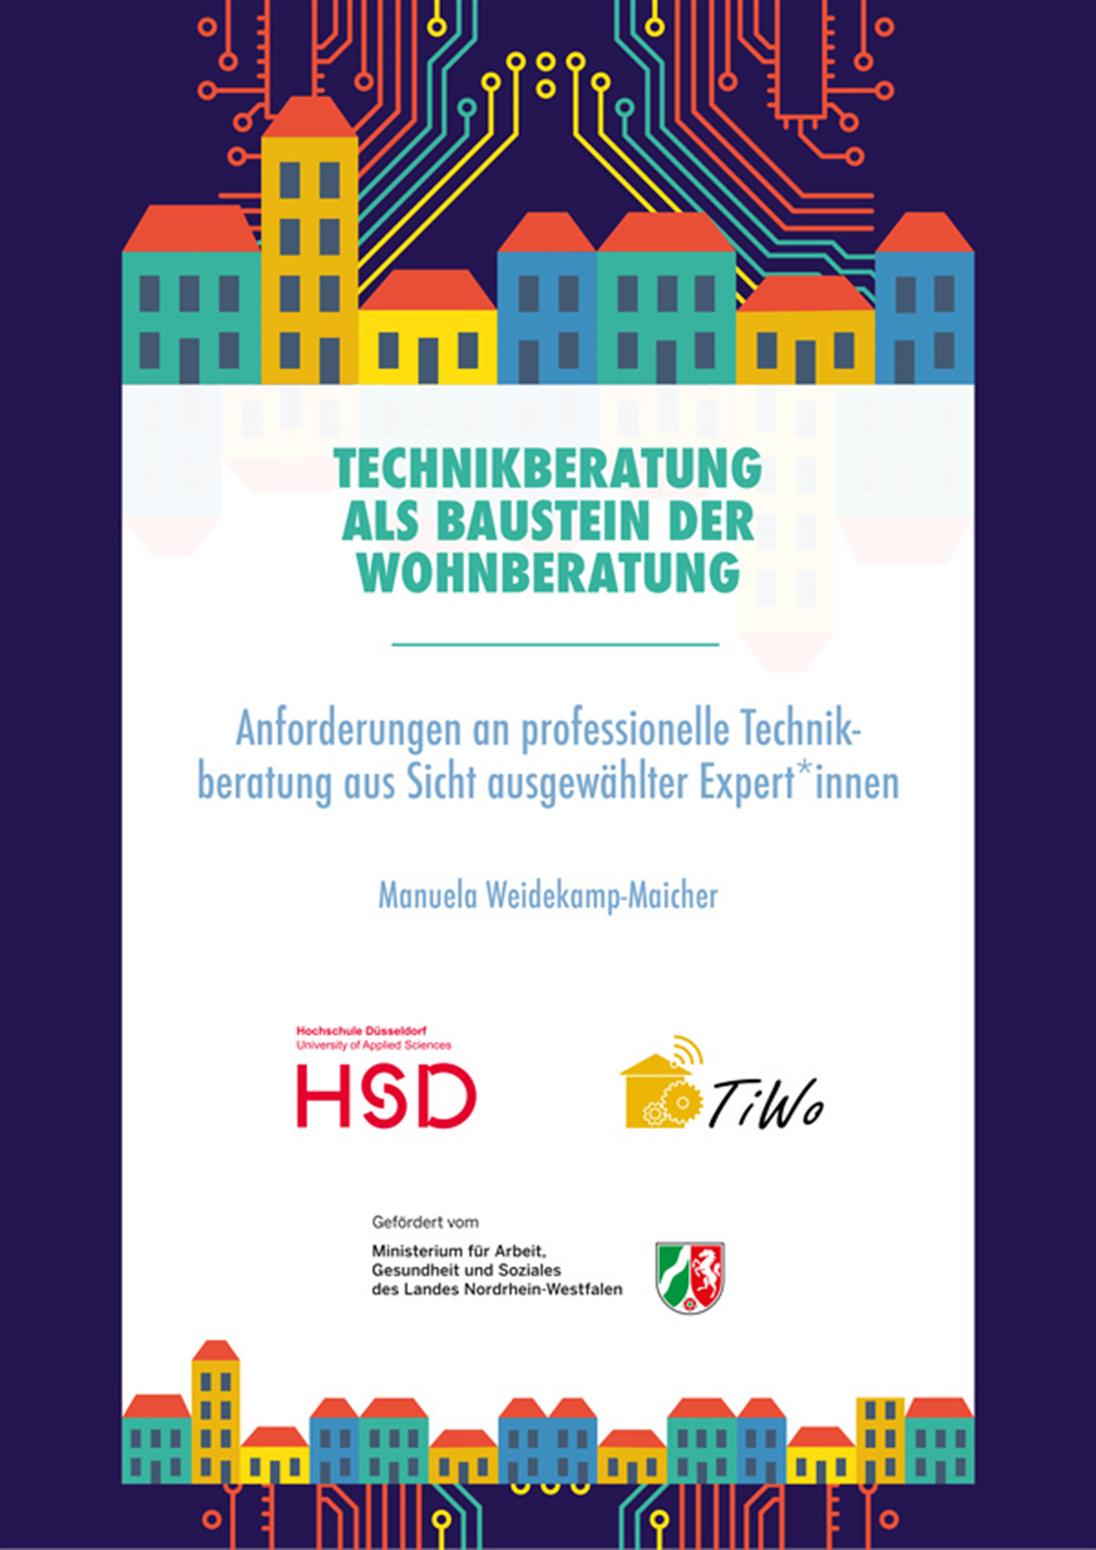 Titelseite der Veröffentlichung "Anforderungen an professionelle Technikberatung
aus Sicht ausgewählter Expert*innen"
von Manuela Weidekamp-Maicher